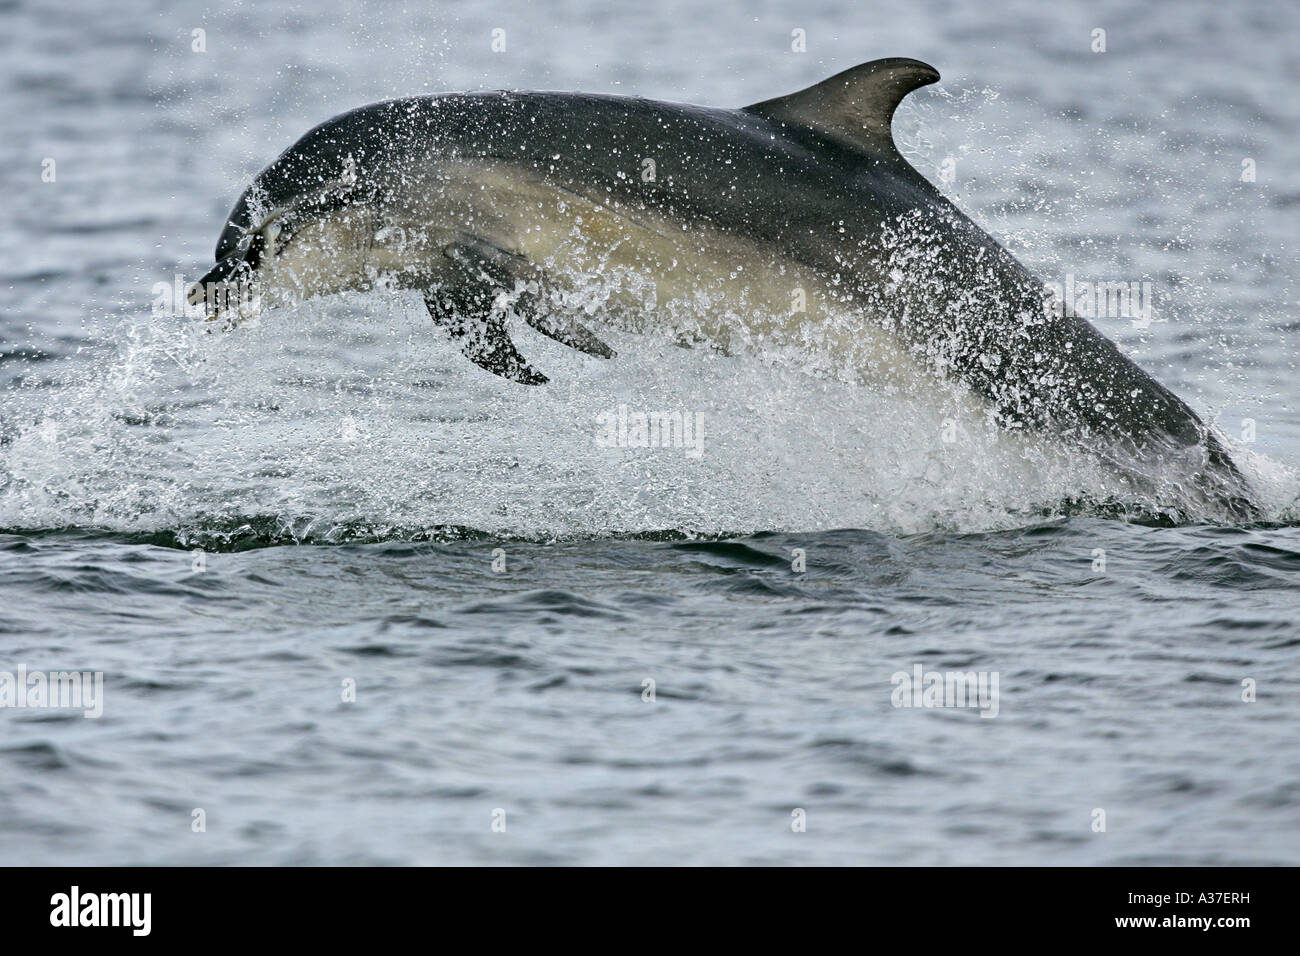 Una salvaje Delfín mular Tursiops truncatus infringir de agua con un salmón capturado en sus mandíbulas Moray, Escocia Foto de stock